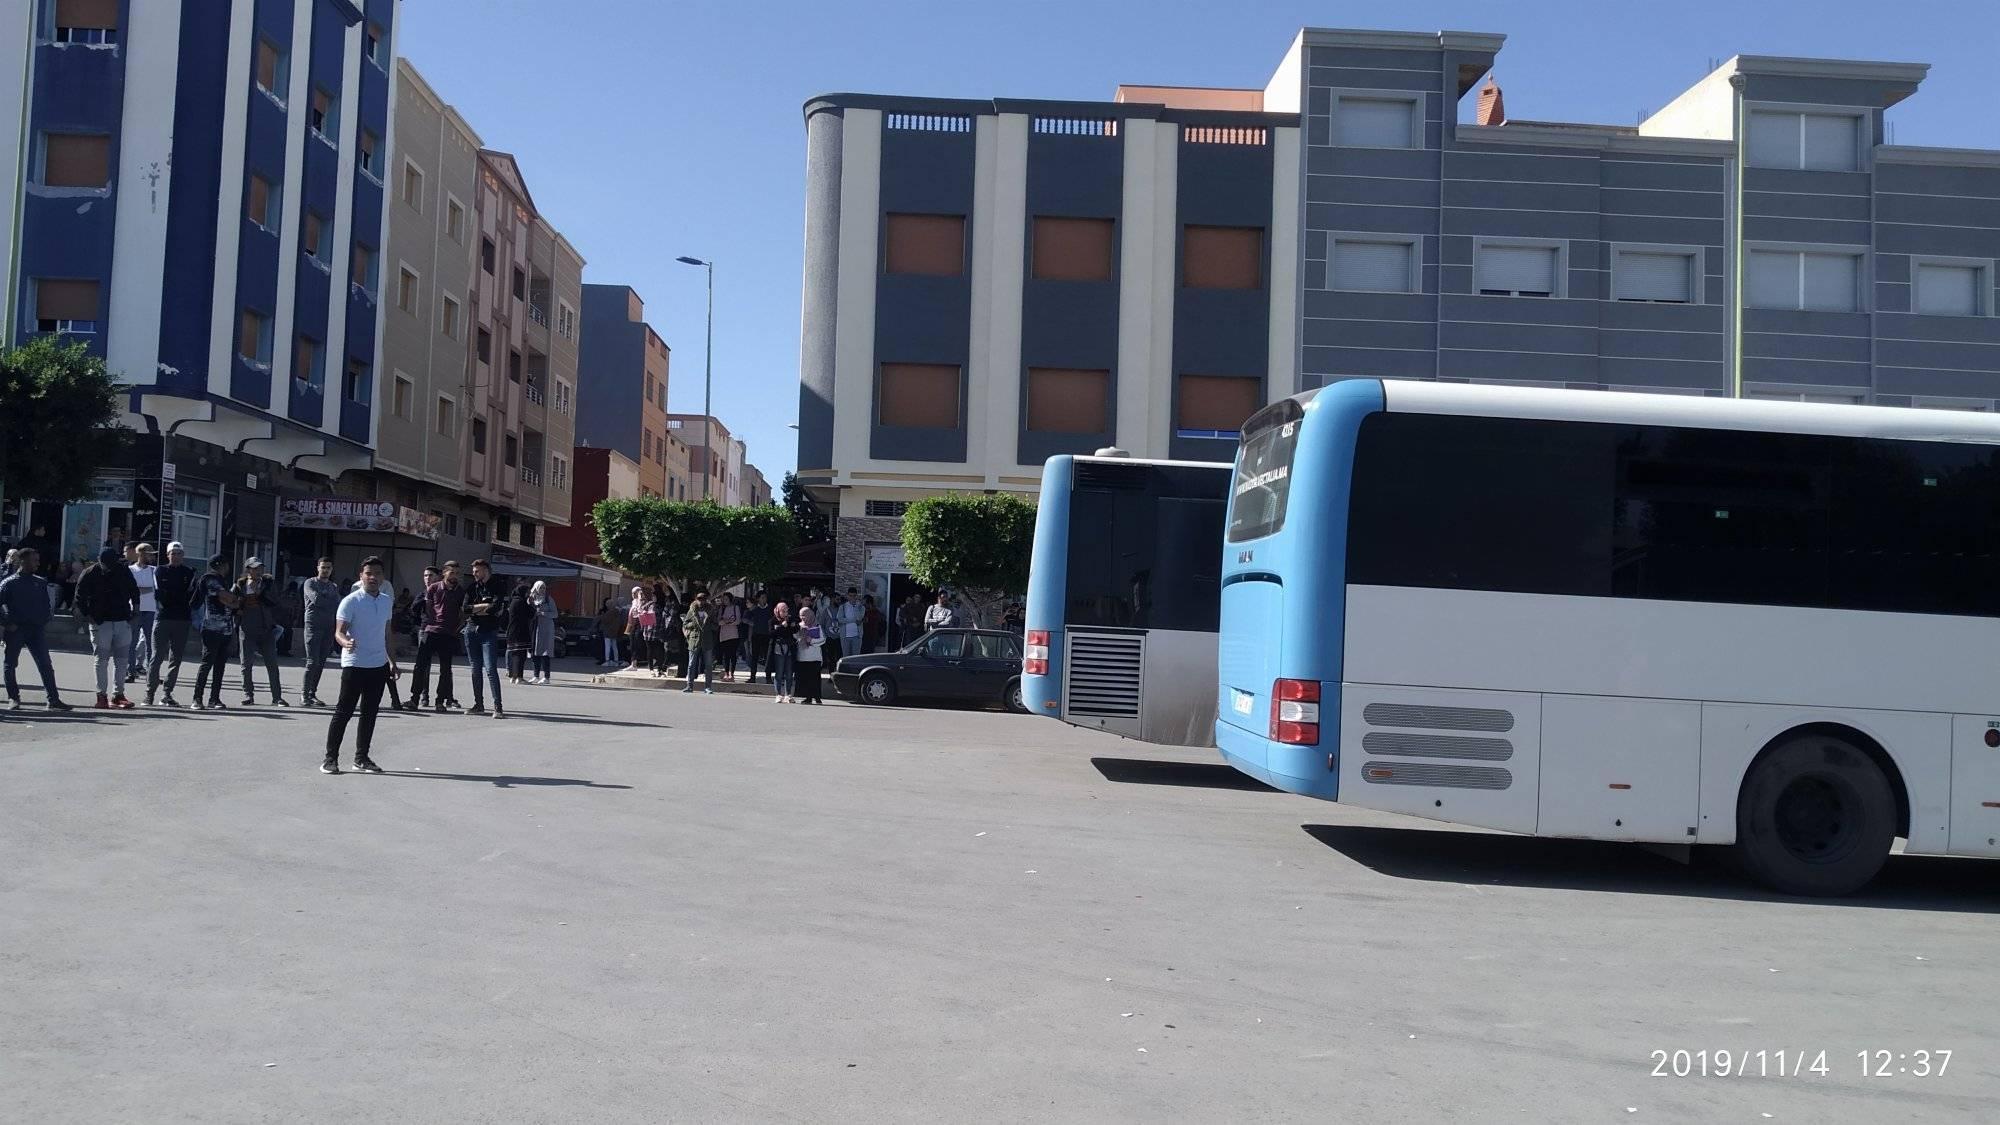 طلبة كلية سلوان يحاصرون حافلات "فيكتاليا" احتجاجا على اعتداء أحد عمال الشركة على طالب جامعي